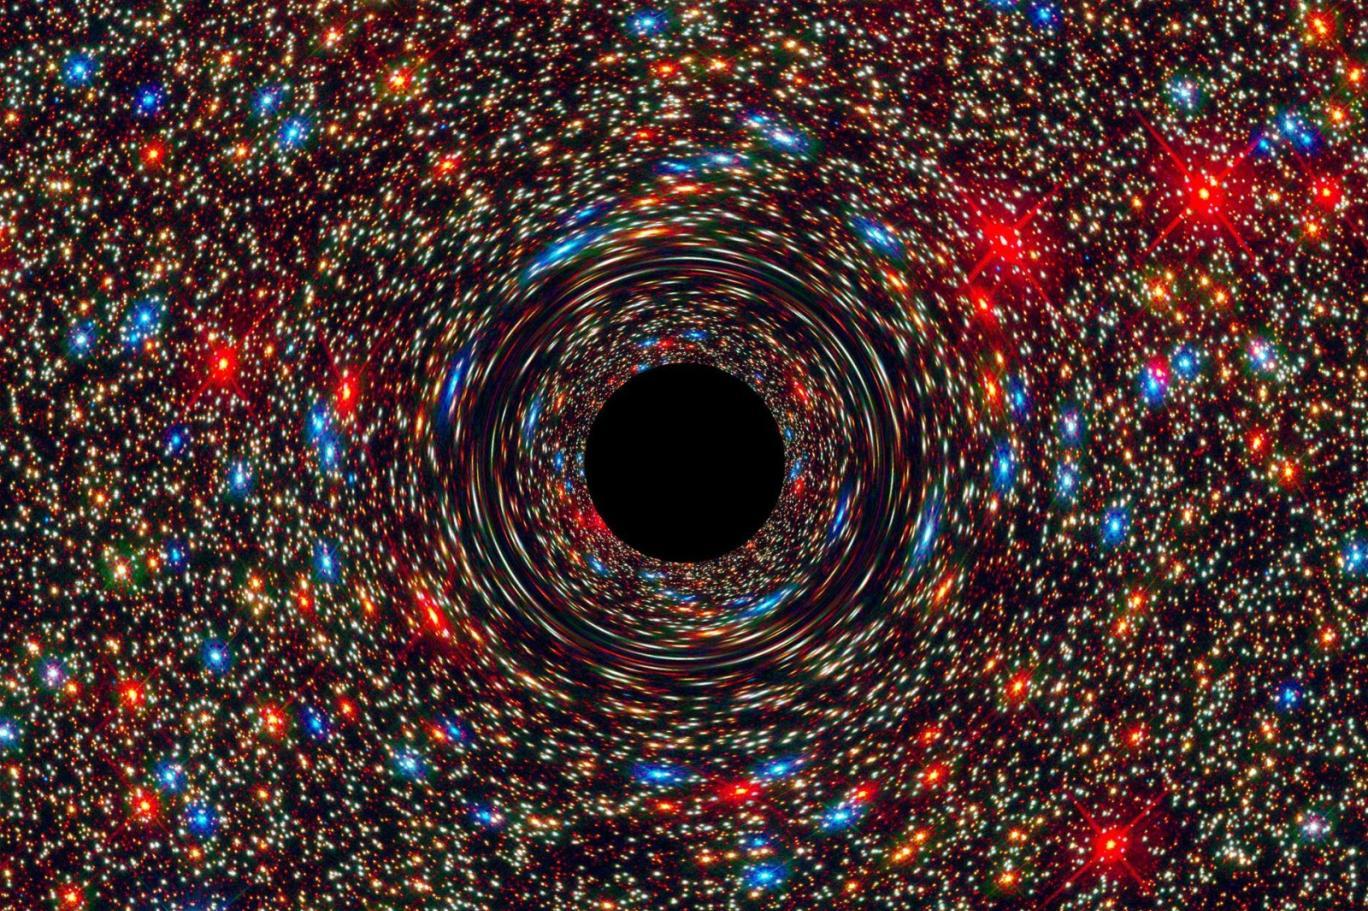 "Yalpalayan" kara delik keşfedildi: Şimdiye kadar görülen en uç örnek